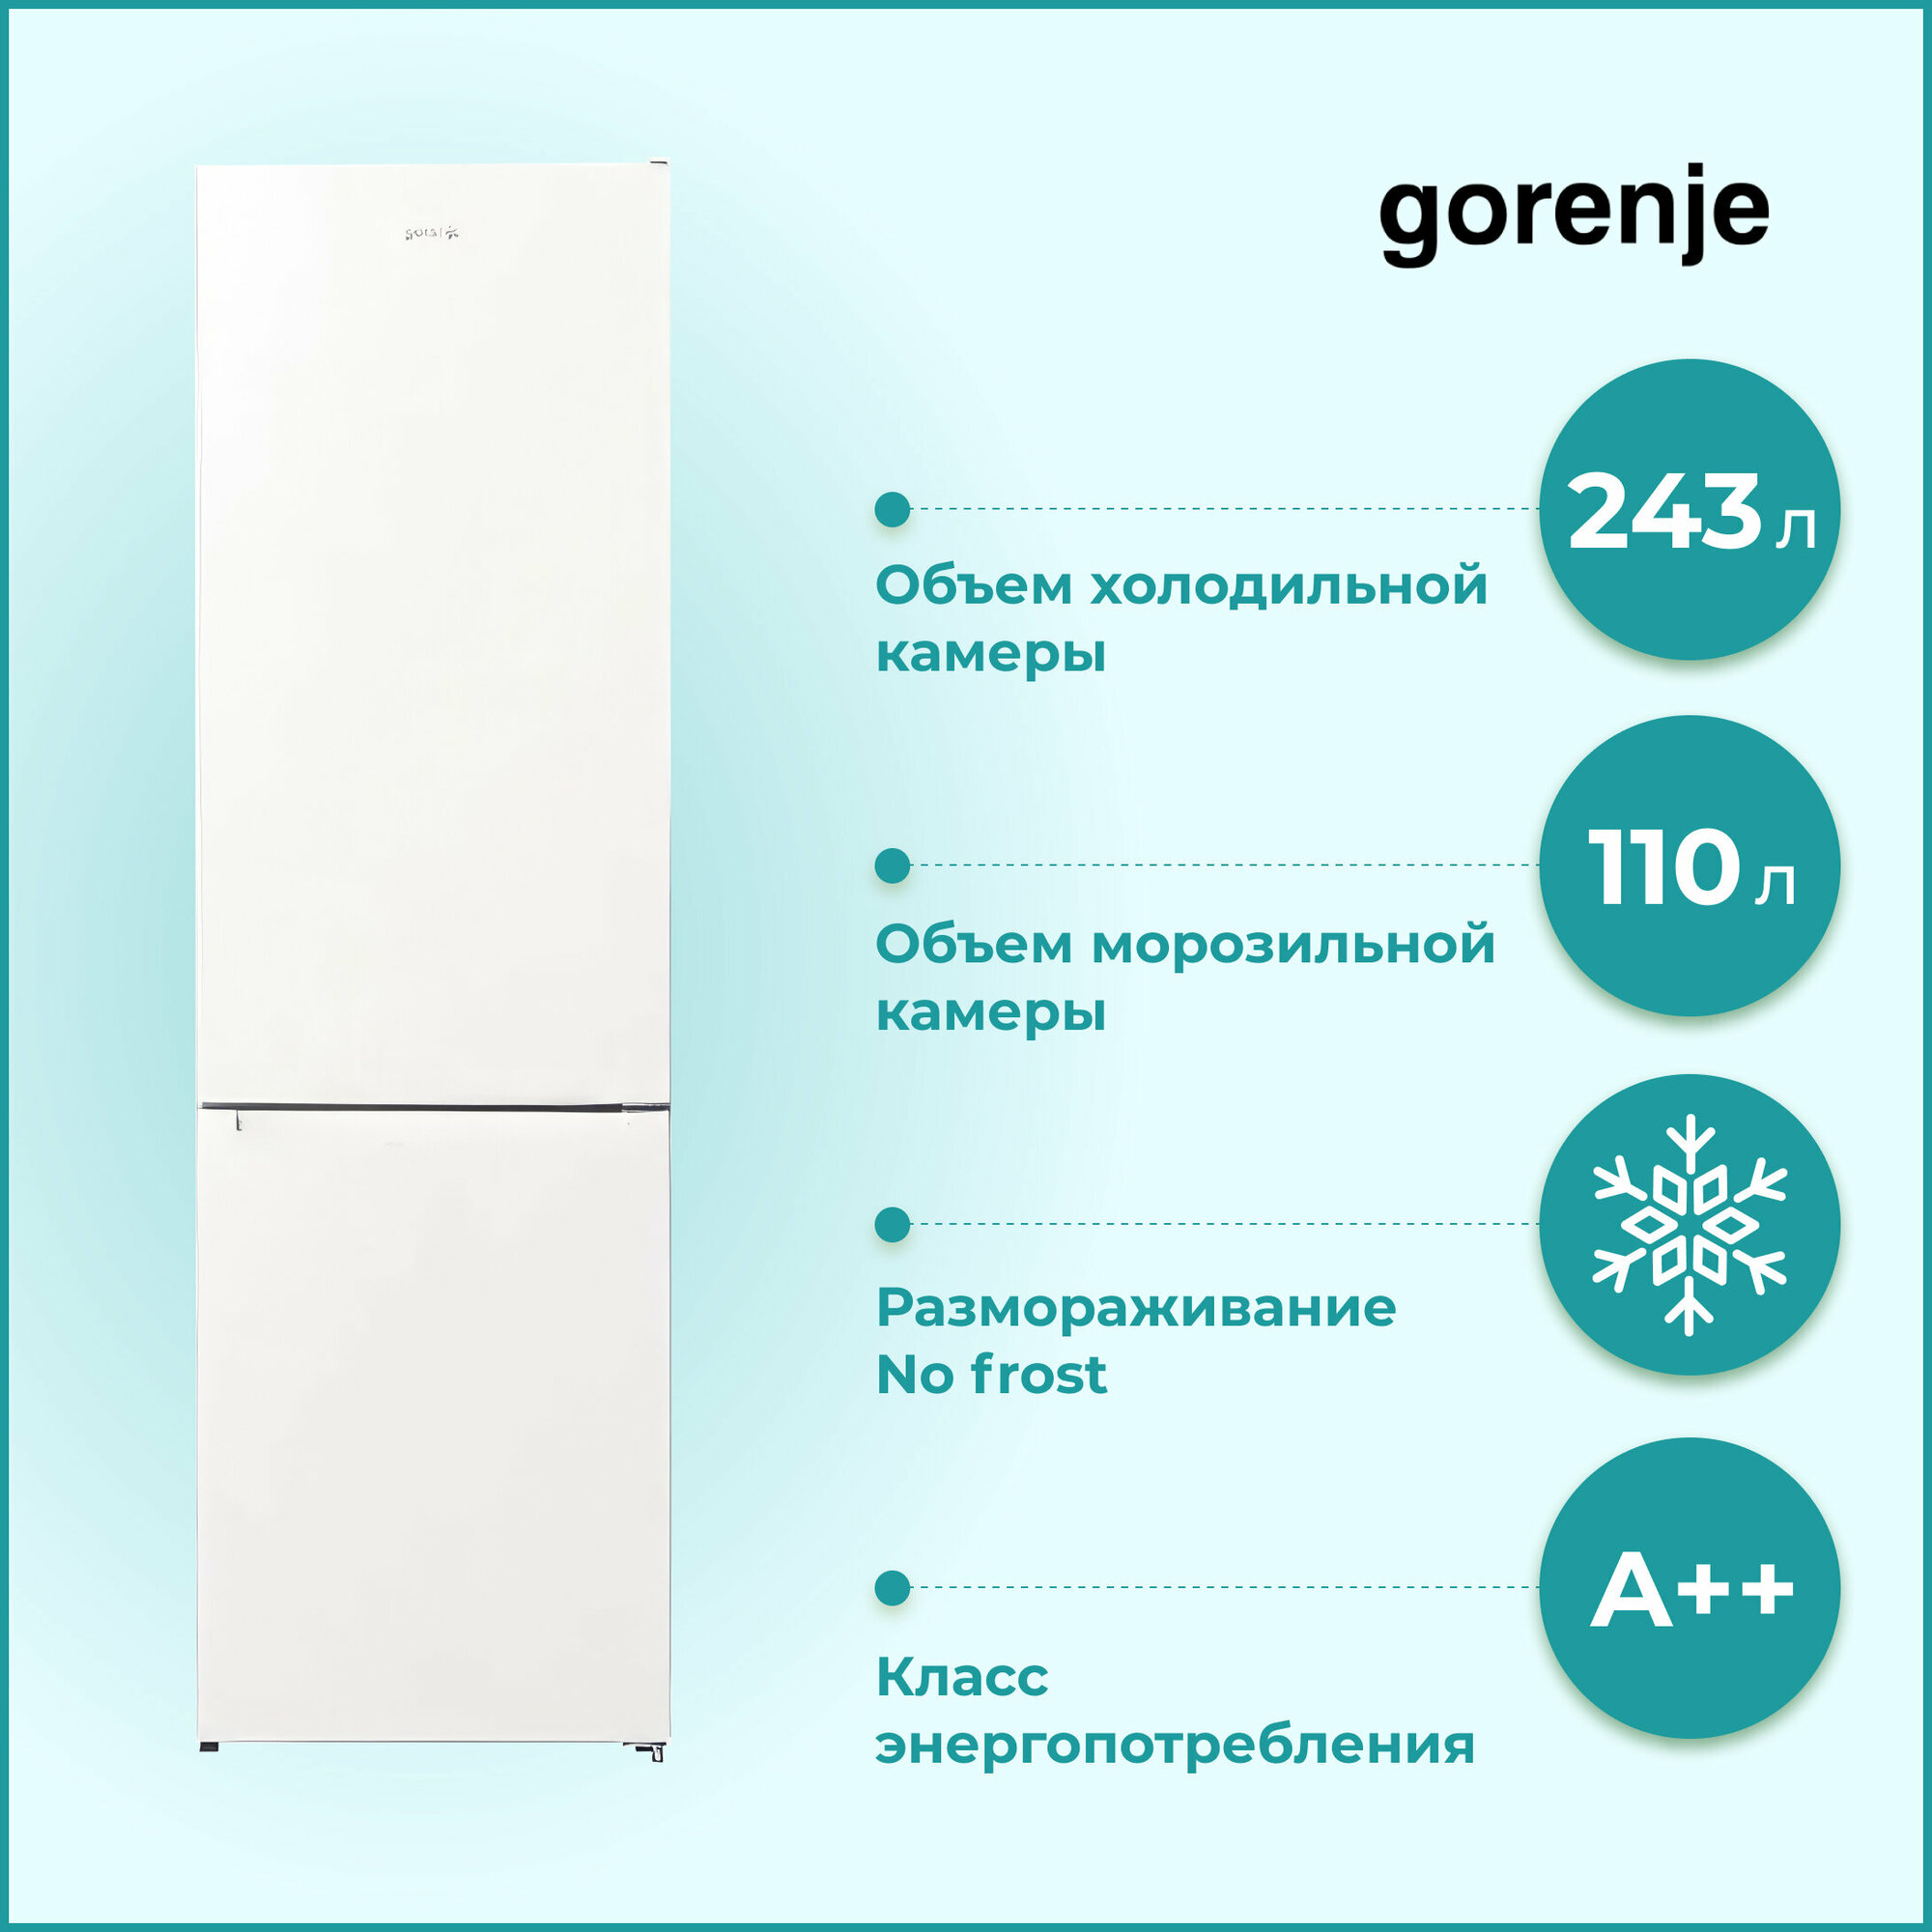 Холодильник Gorenje NRK 6202 EW4, белый